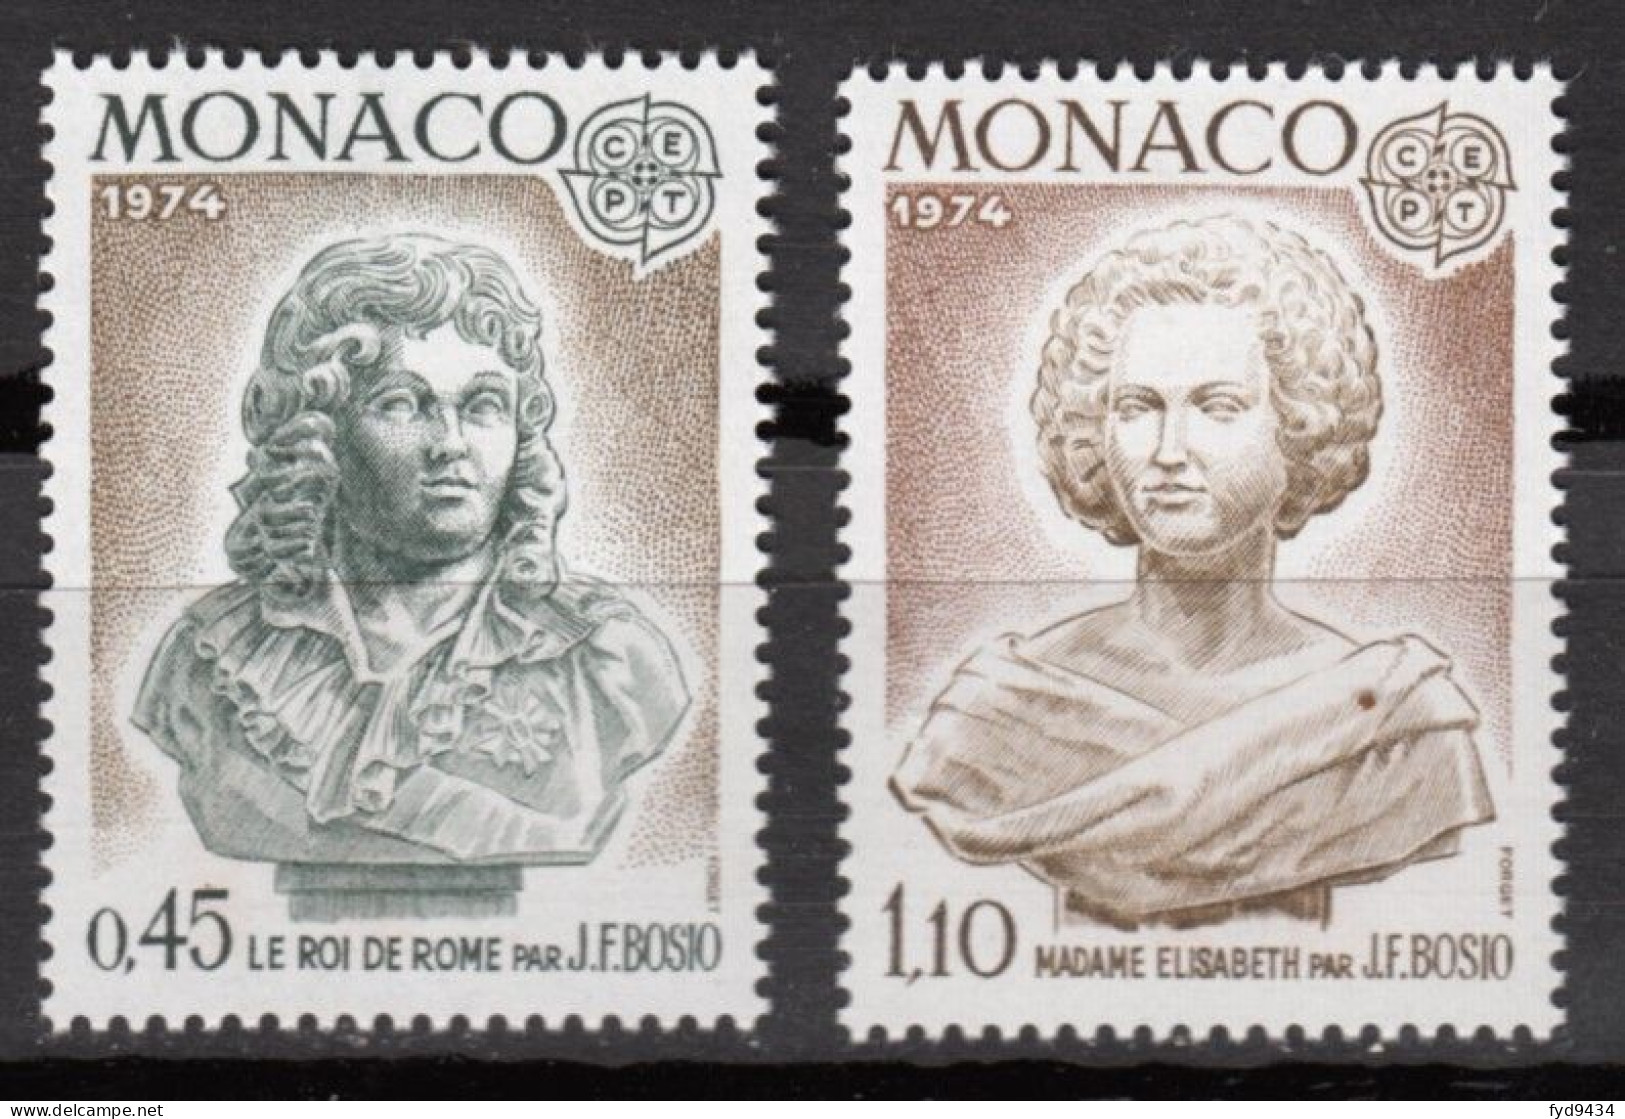 N° 957 Et N° 958 De Monaco - X X - ( E 681 ) - 1974